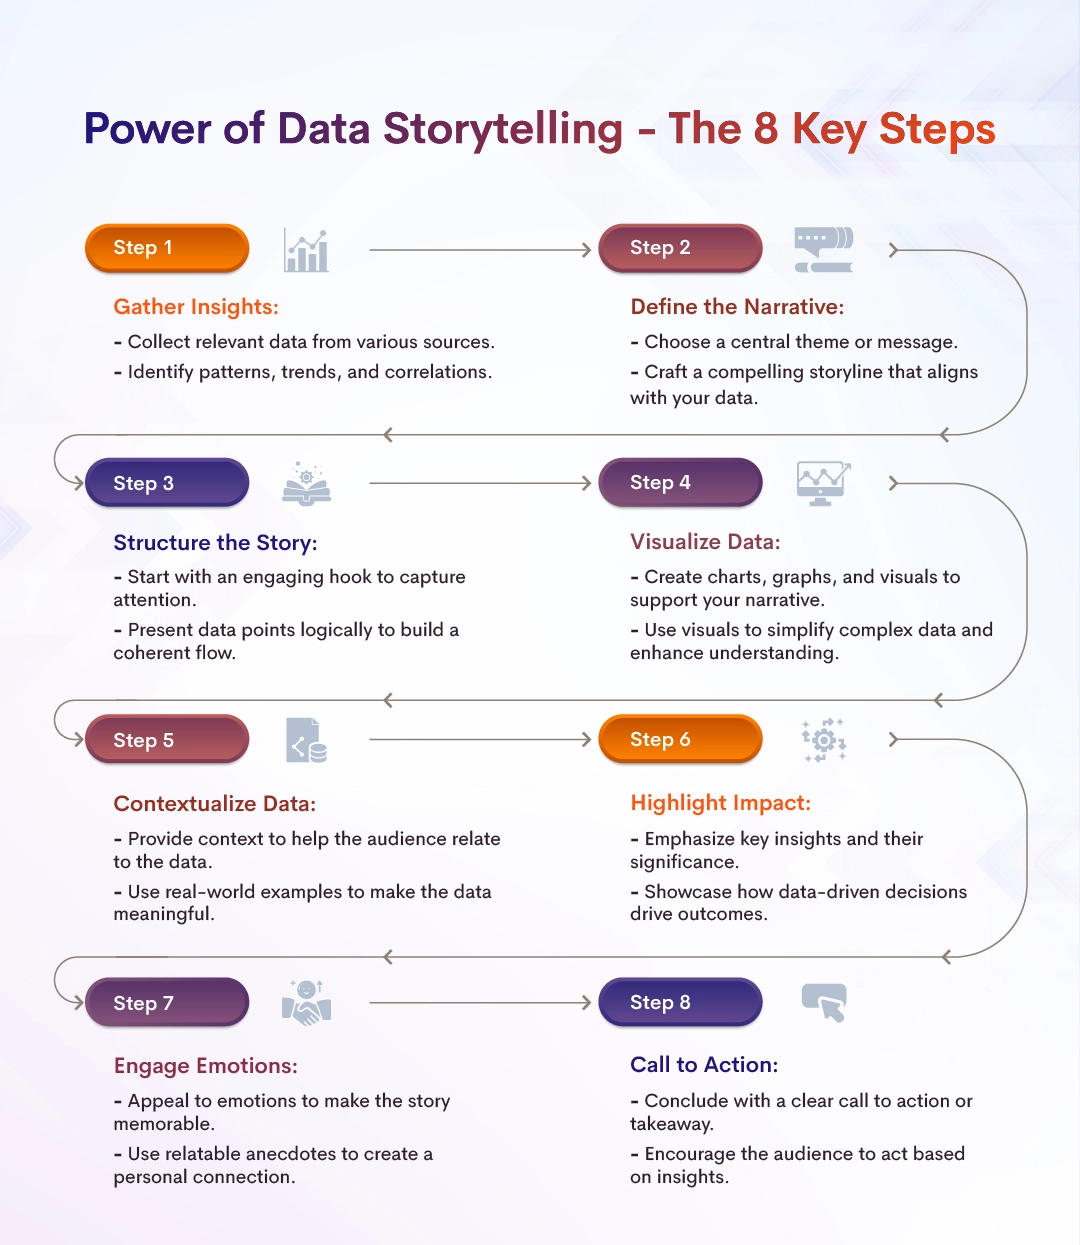 Power of Data Storytelling - The Key 8 Steps